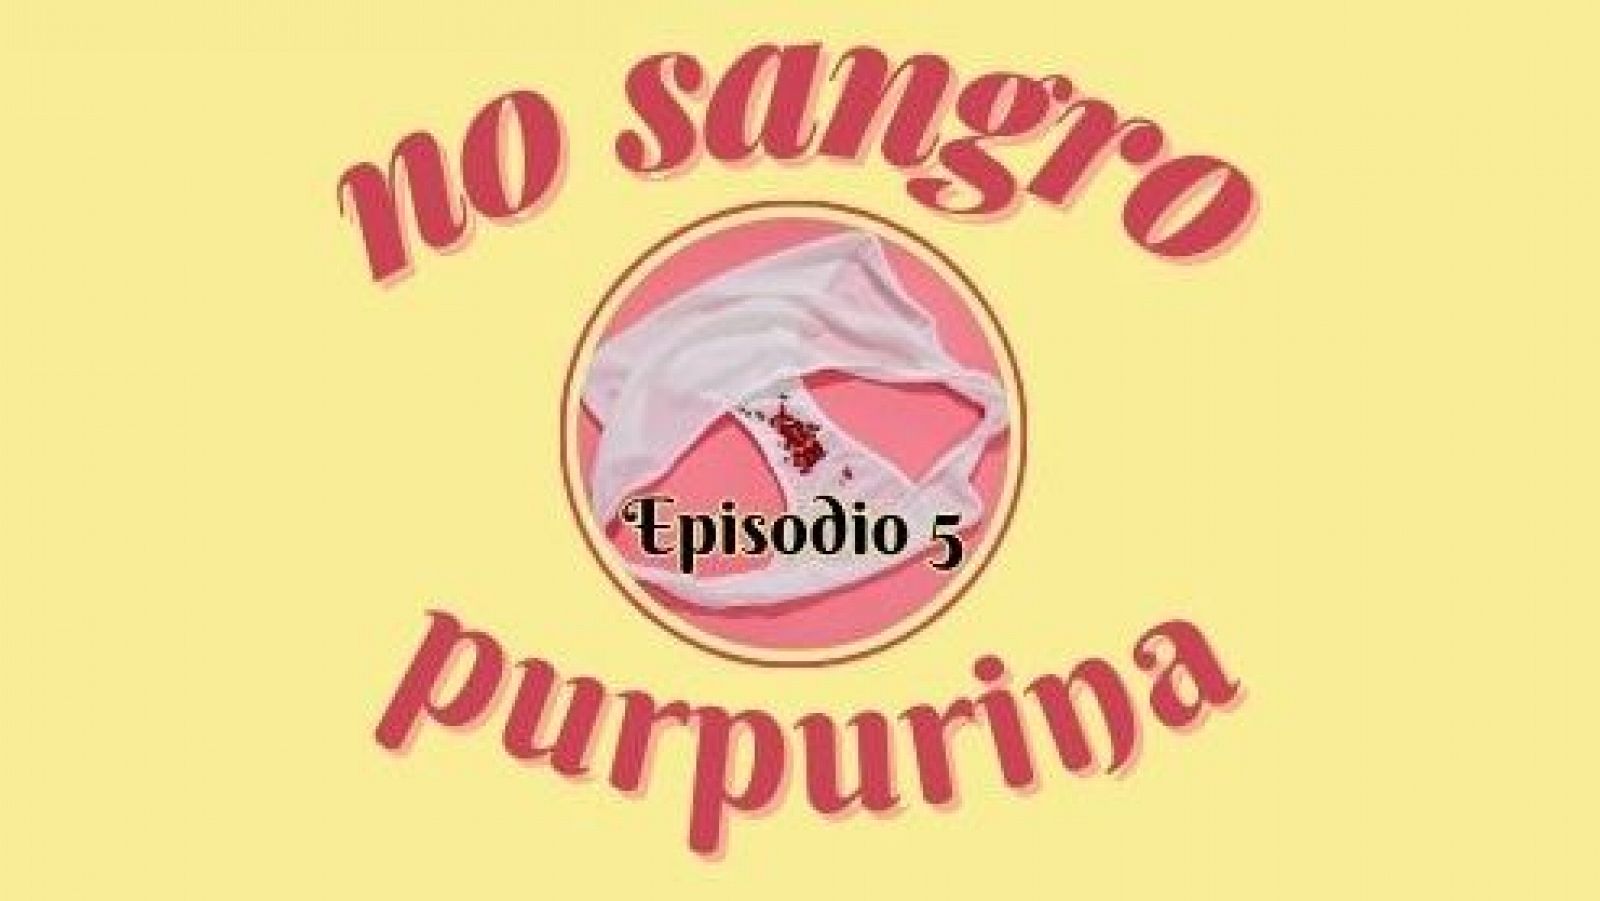 No sangro purpurina - Episodio 5: La regla antes, durante y despus del embarazo - Escuchar ahora